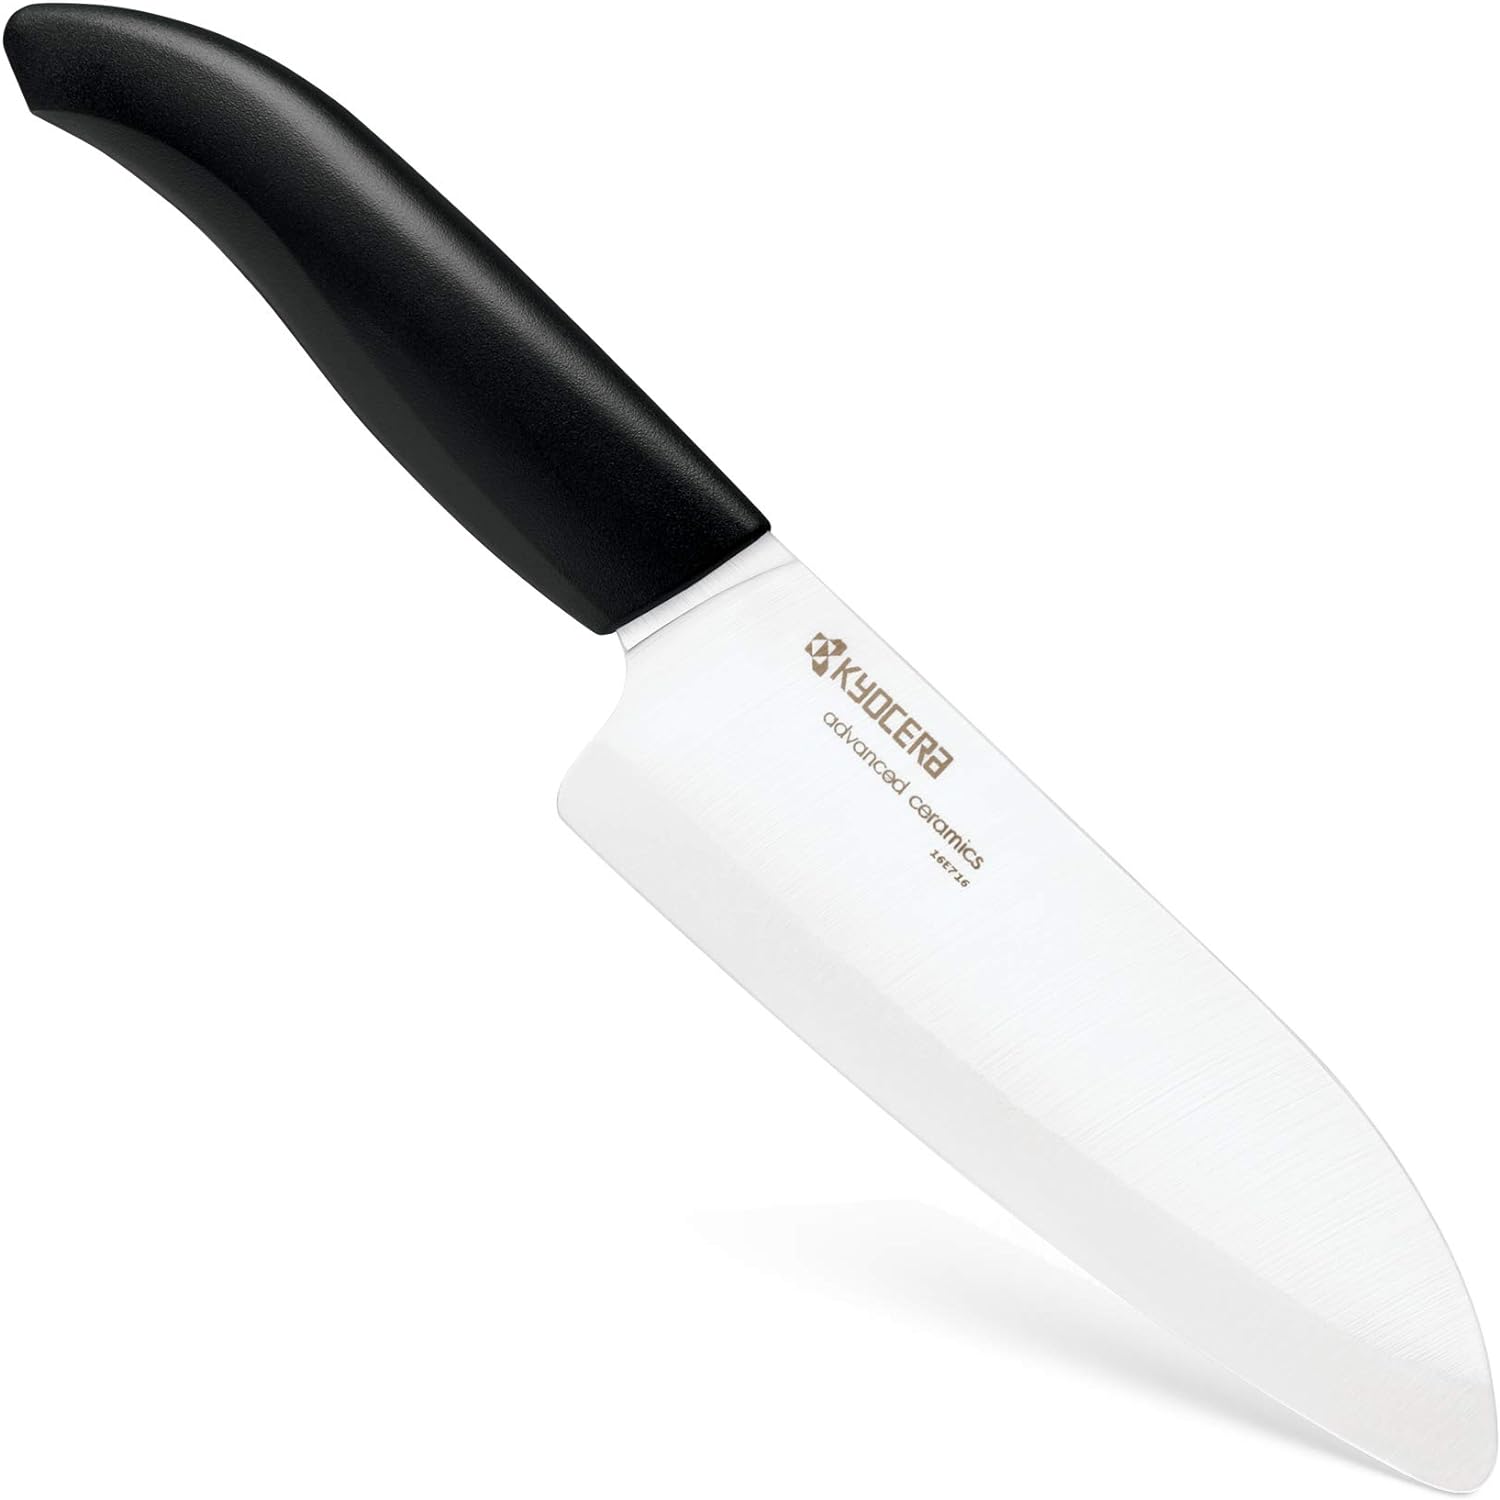 Migliori coltelli da arrosto, migliori coltelli per arrosto, coltello per arrosto Kyocera FK140WH, coltello santoku, coltello in ceramica